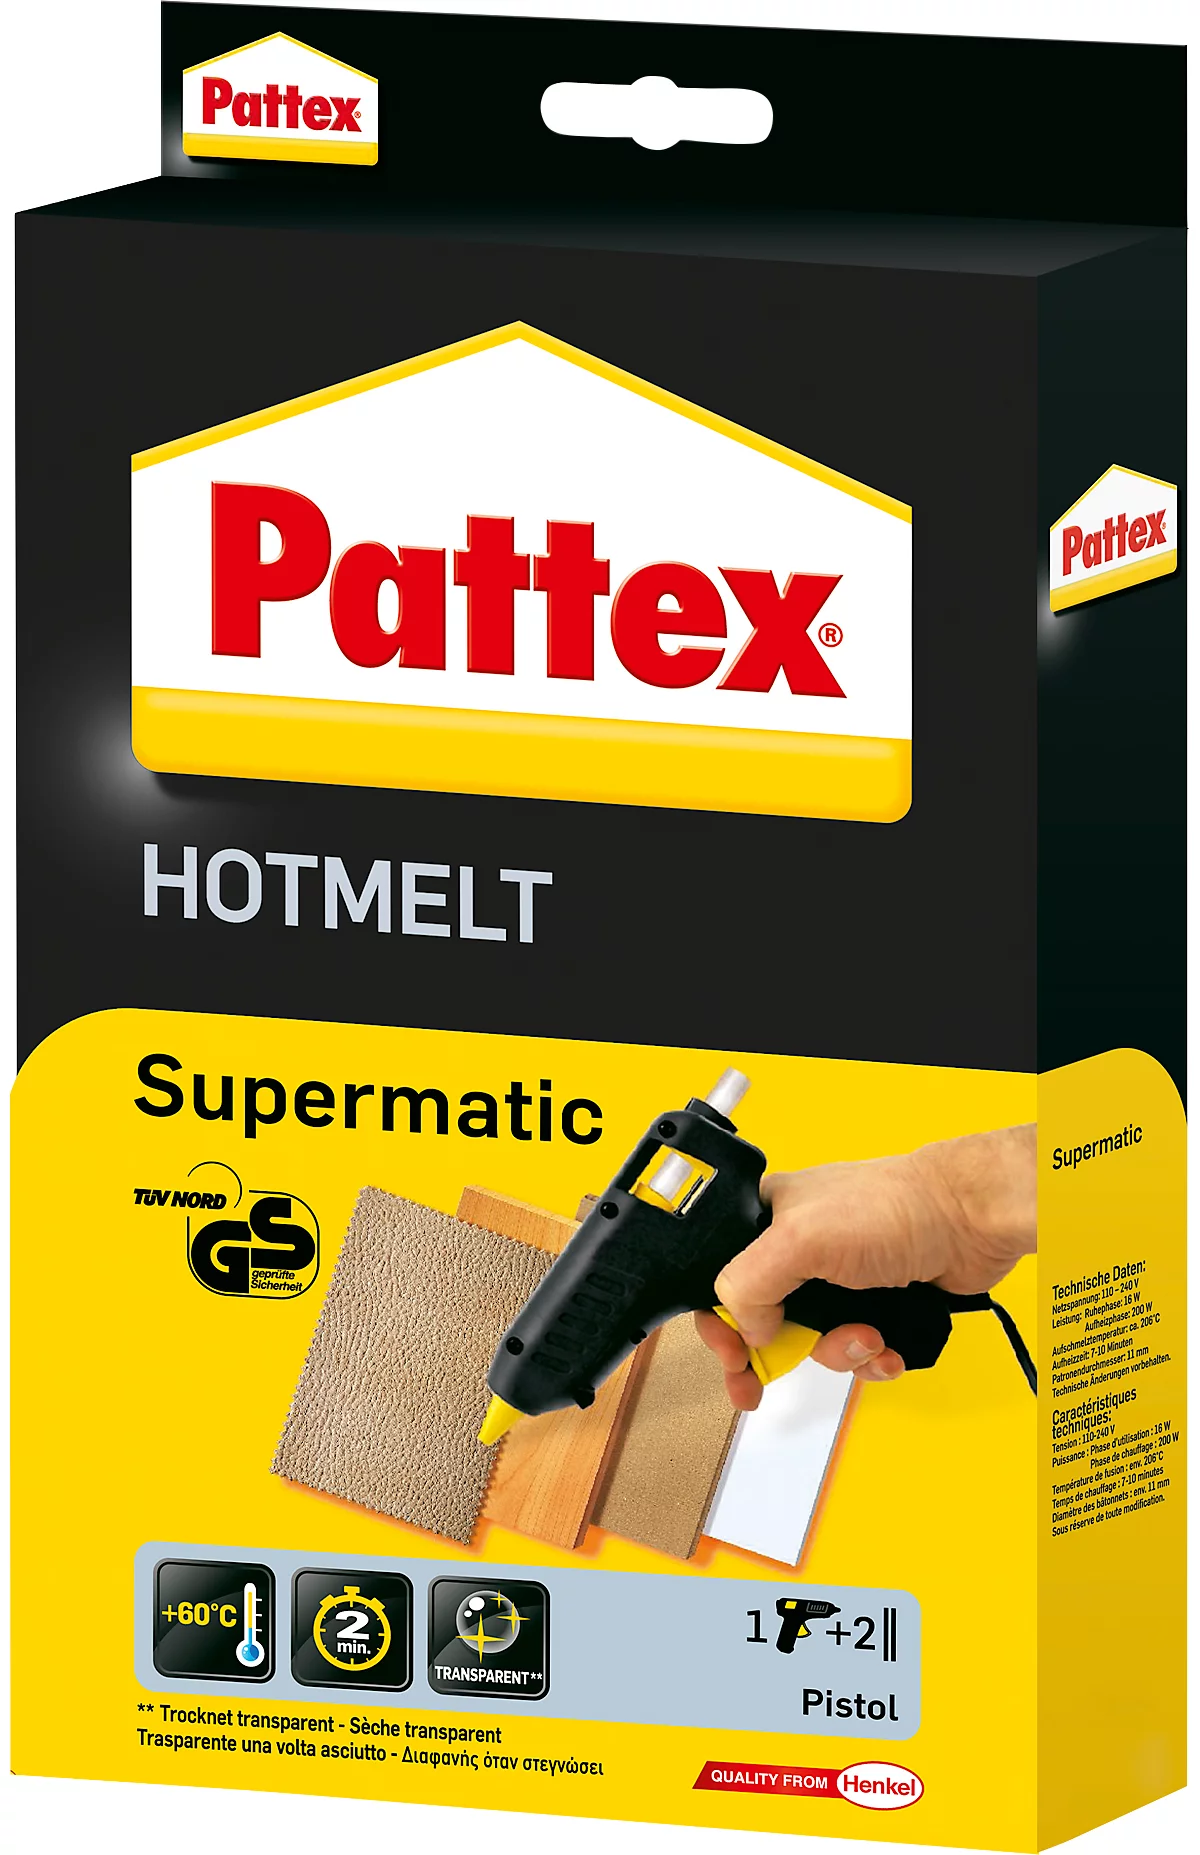 Heißklebepistole Pattex® Hotmelt Supermatic, mechanischer Vorschub, elektronischer Temperaturregler, Standbügel, 2 Heißklebesticks, schwarz-gelb